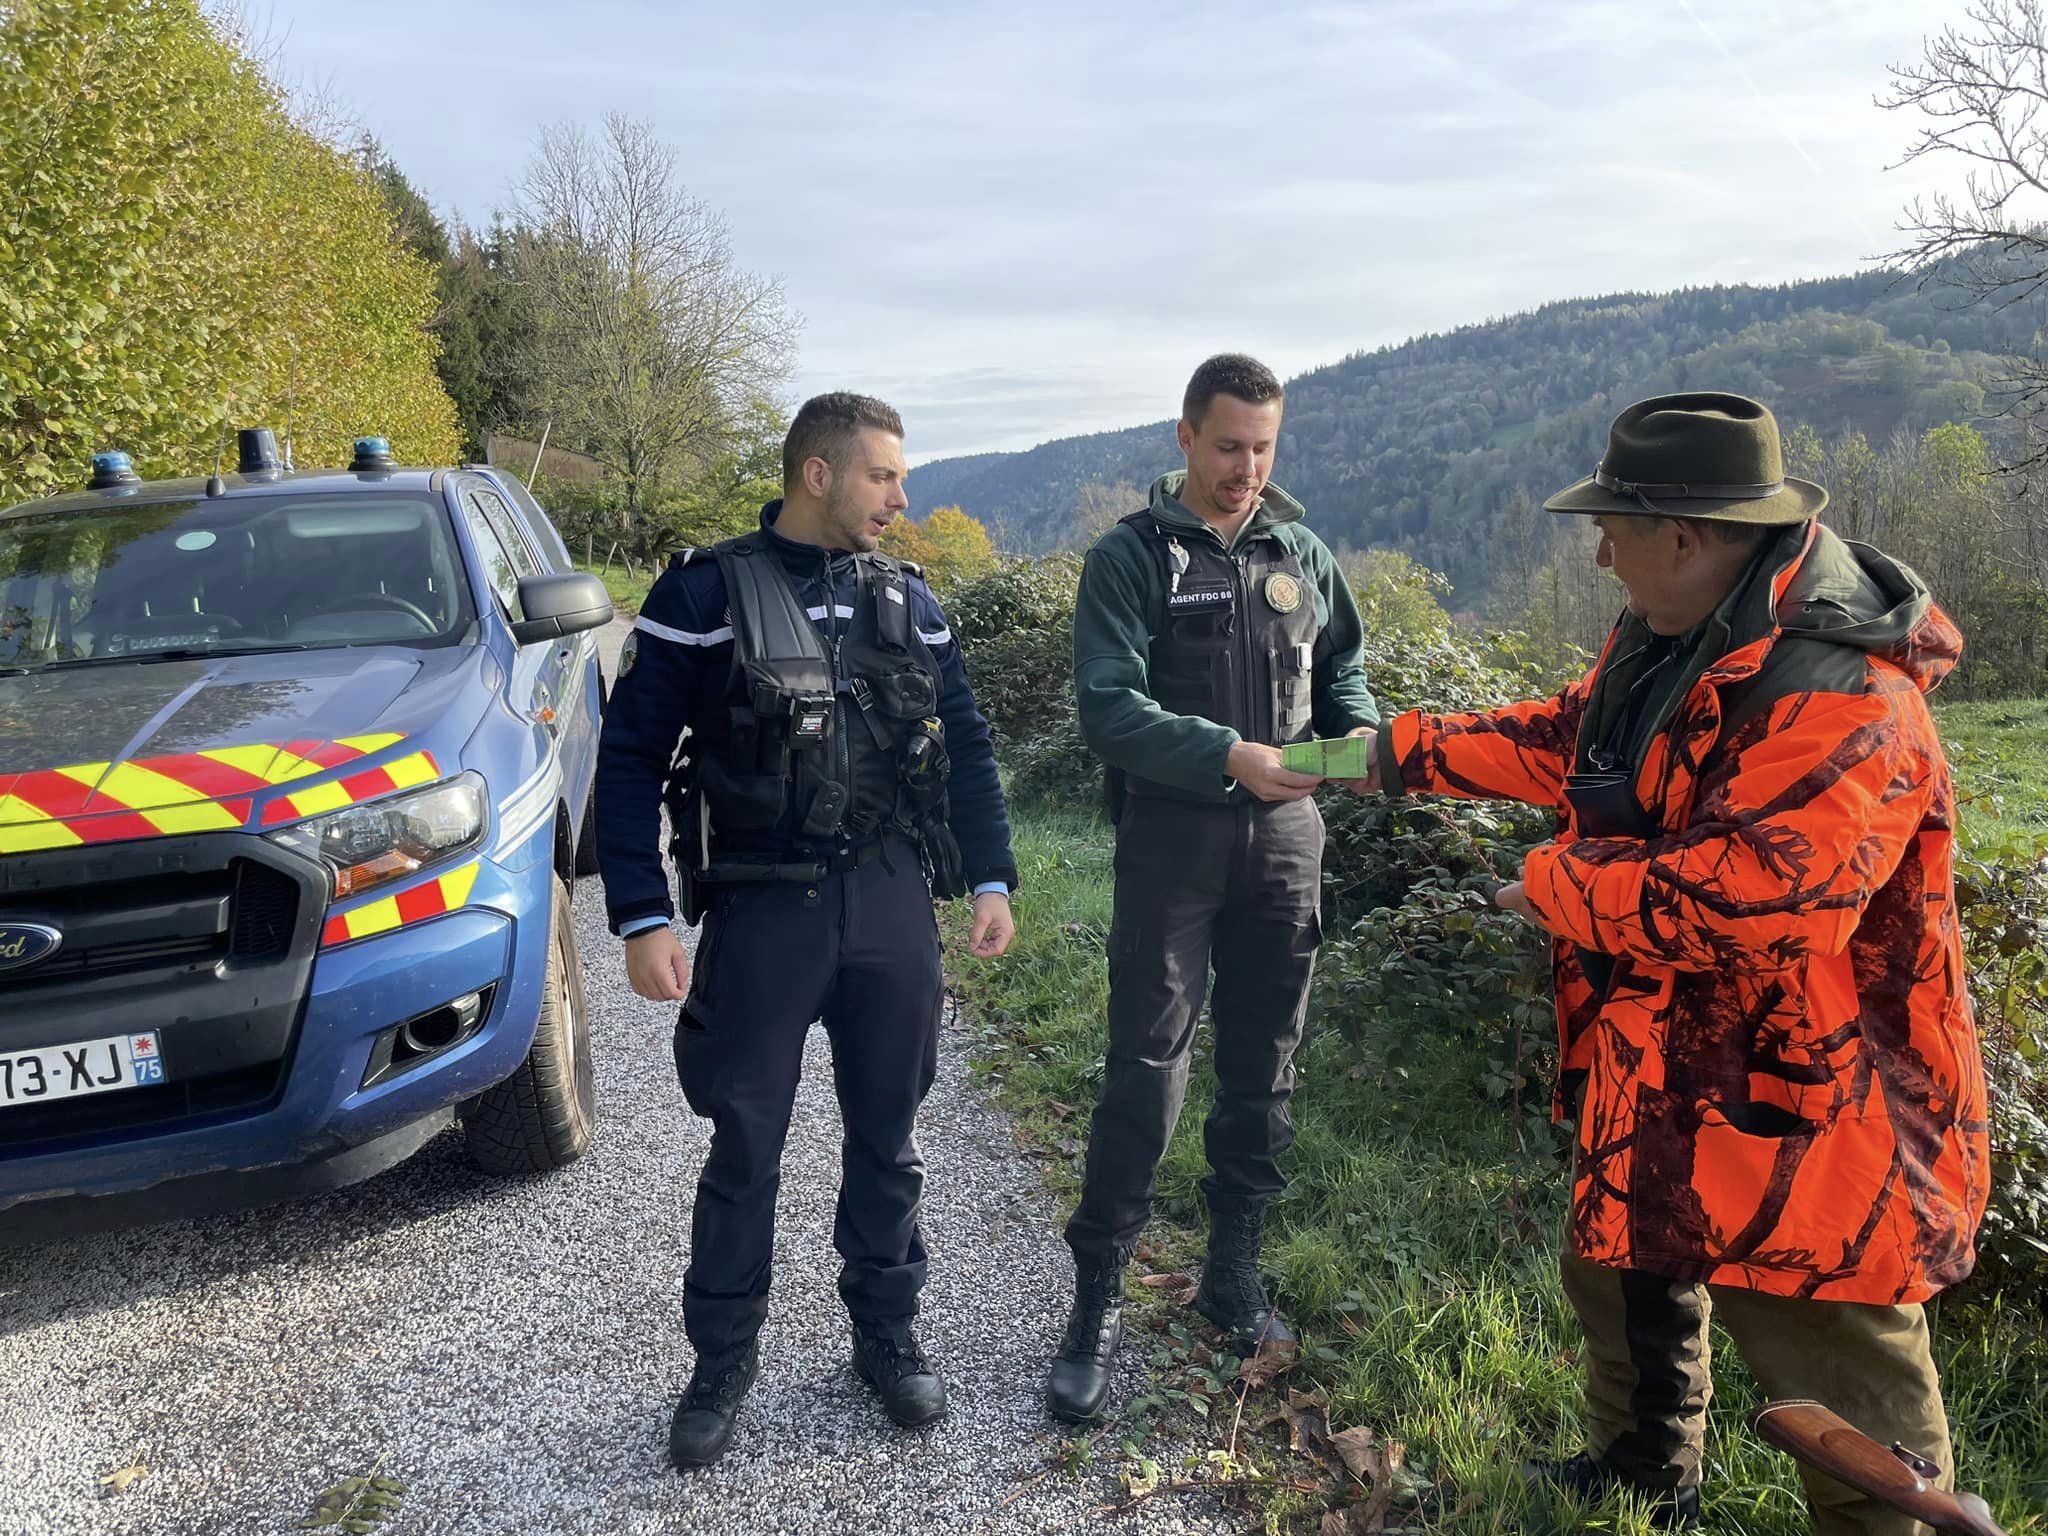 Vosges : des chasseurs contrôlés, aucune infraction relevée